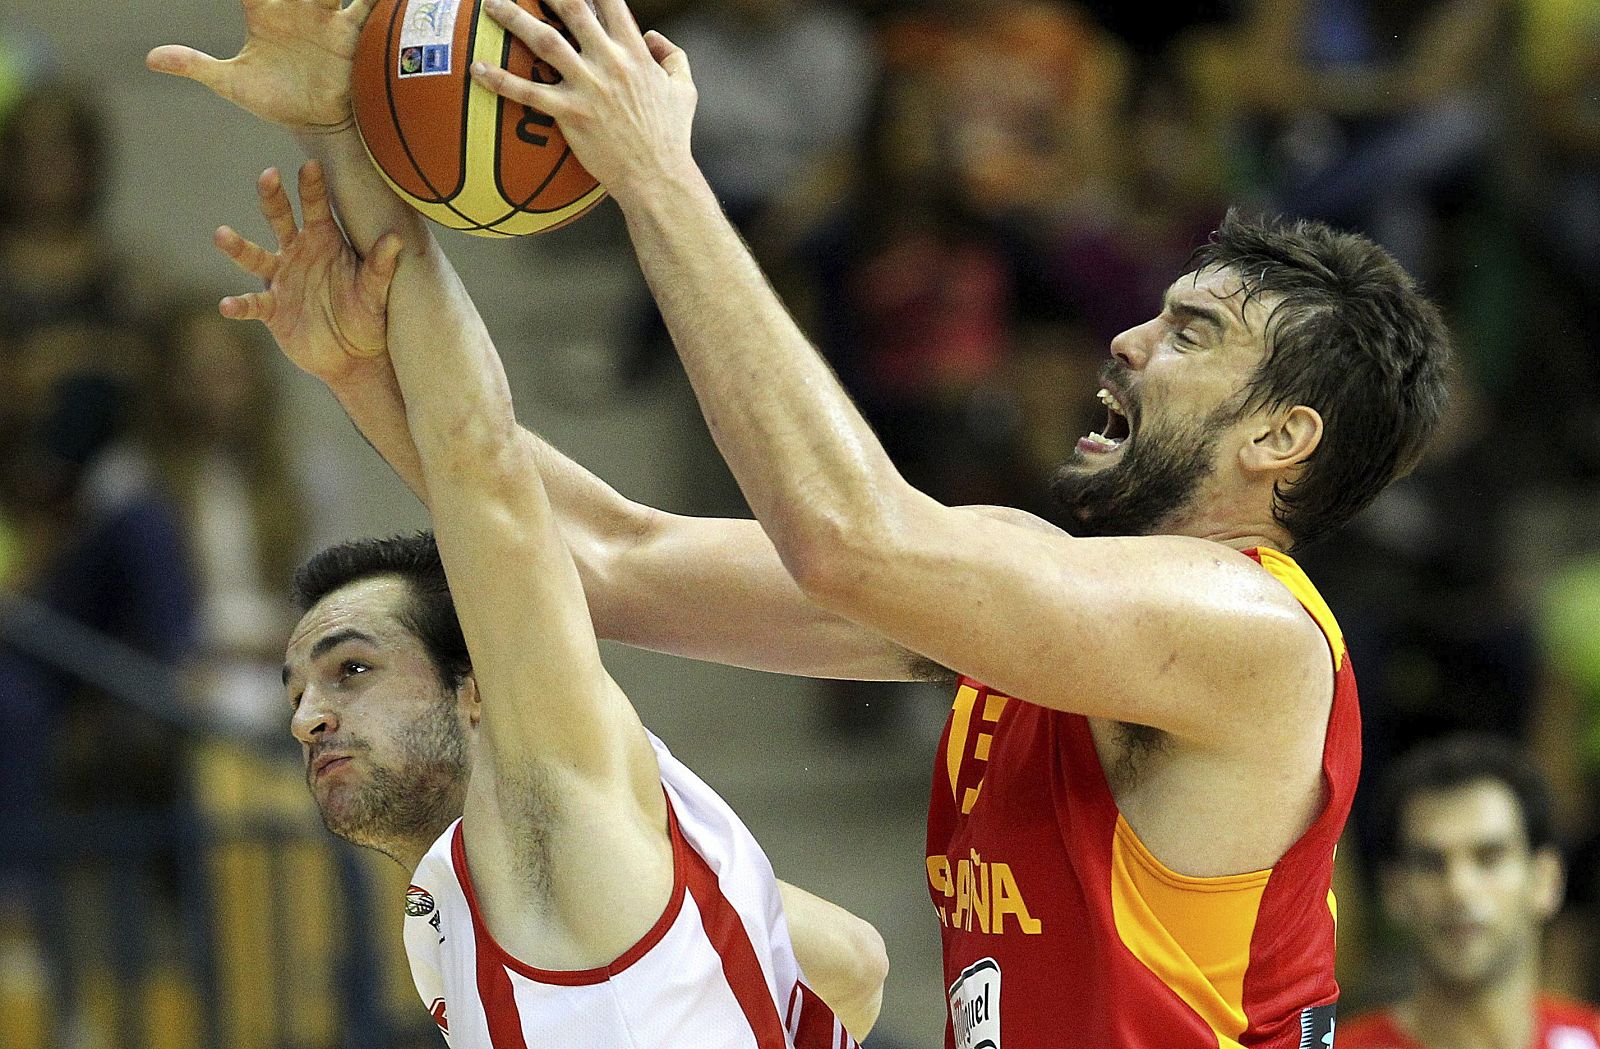 El jugador español Marc Gasol lucha por el balón con Duda Sanadze durante el partido del Eurobasket 2013 disputado entre España y Georgia.